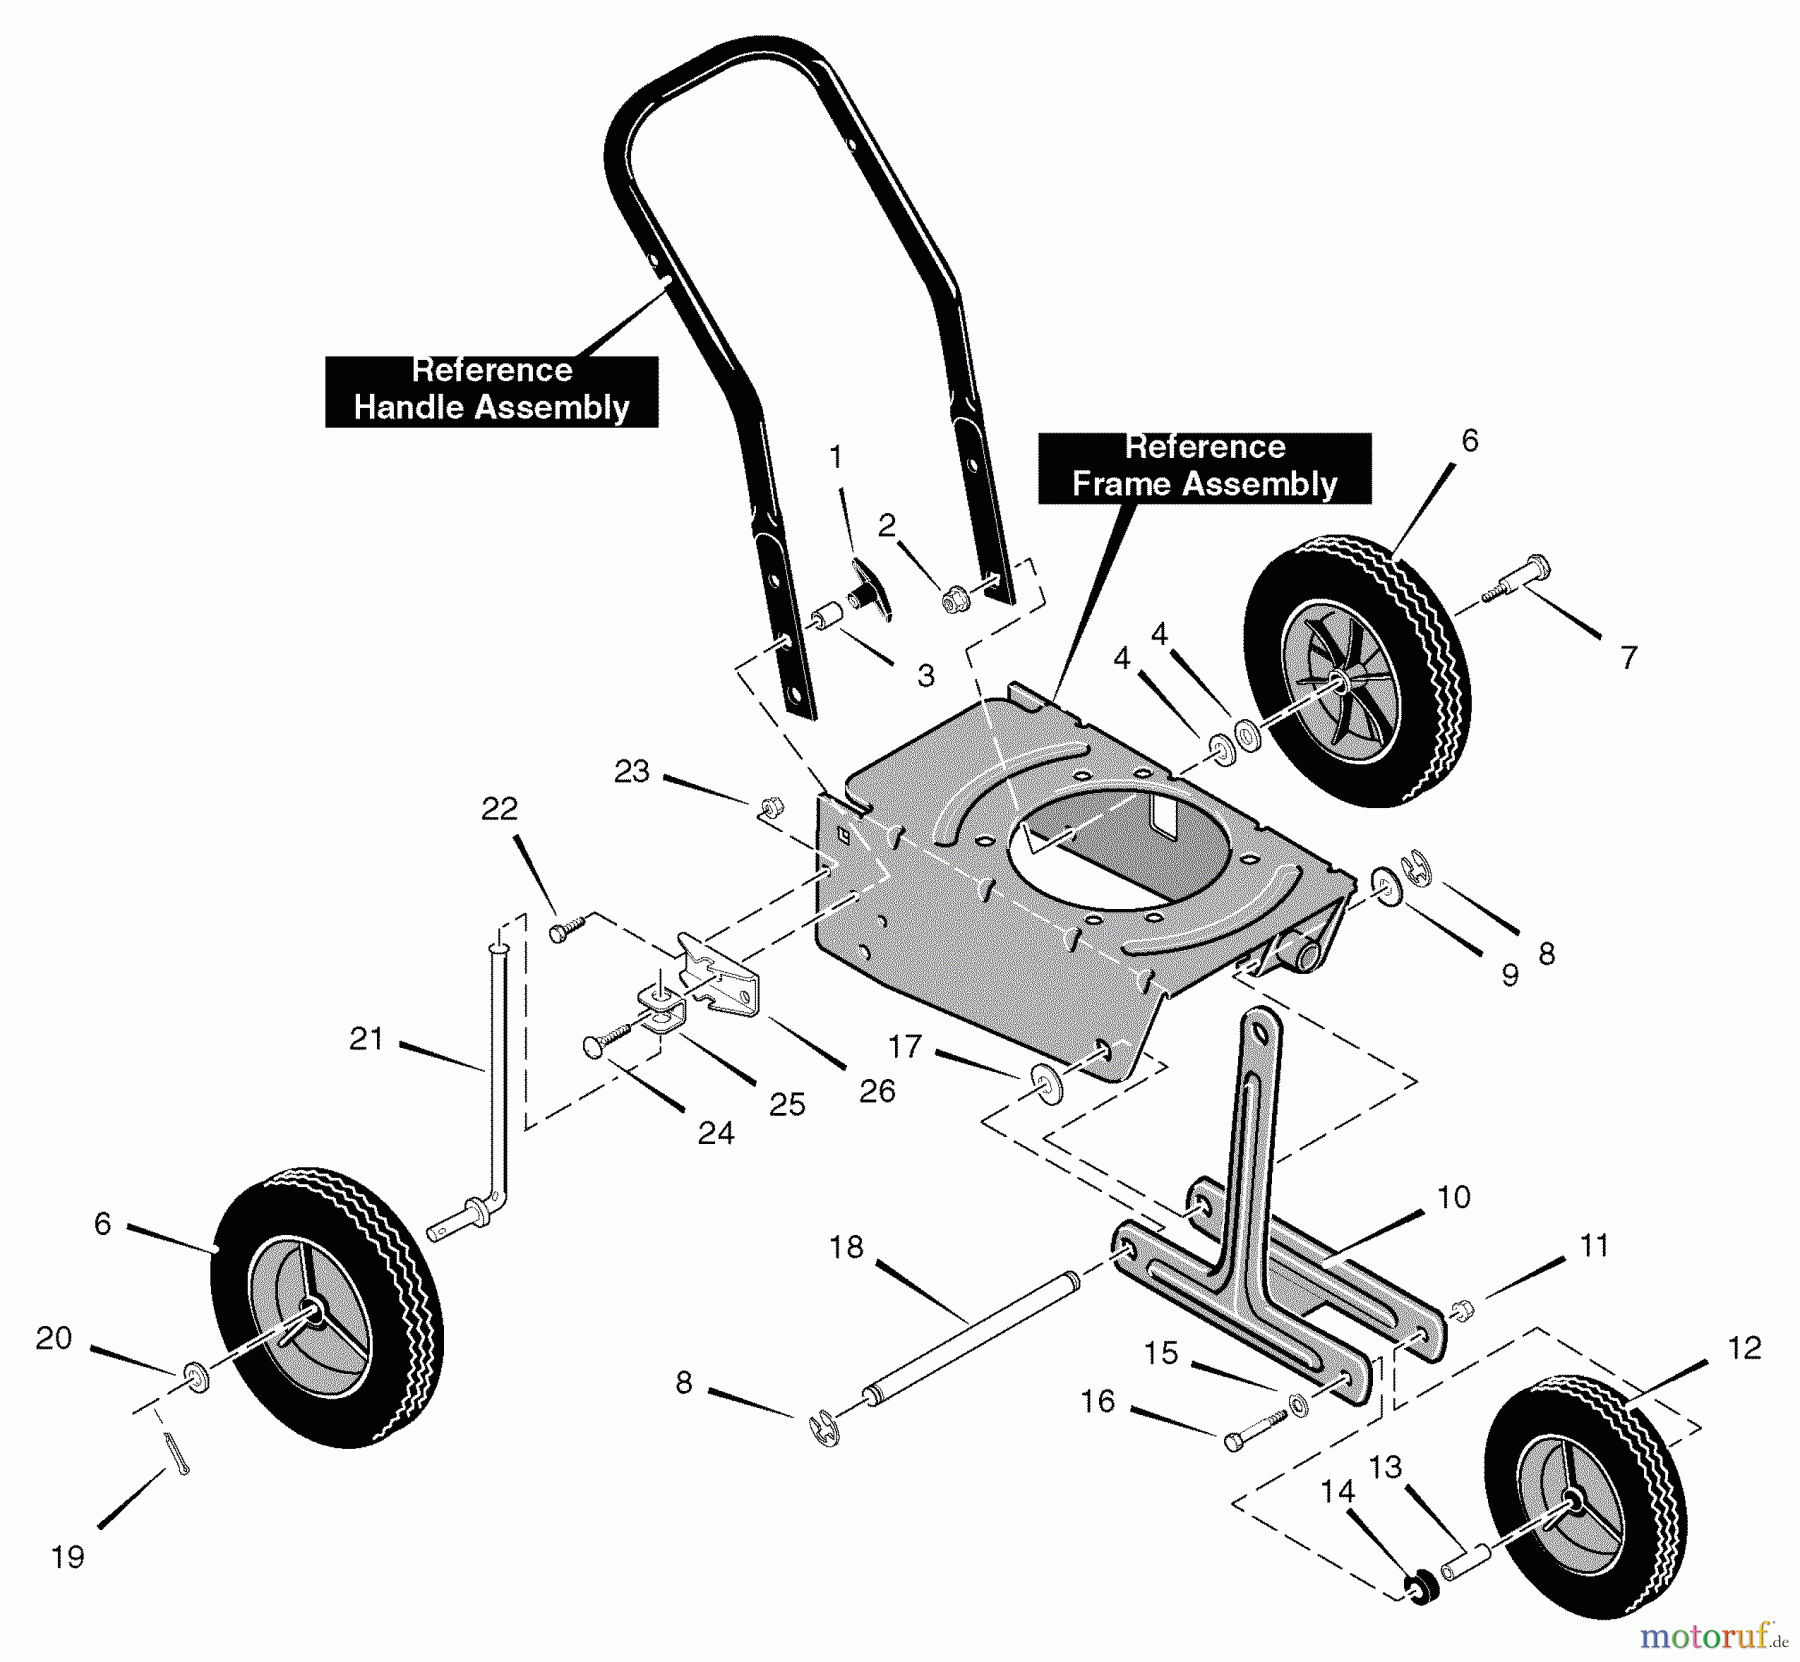  Murray Kantenschneider 536.772350 - Craftsman Edger (2006) (Sears) Wheel Assembly